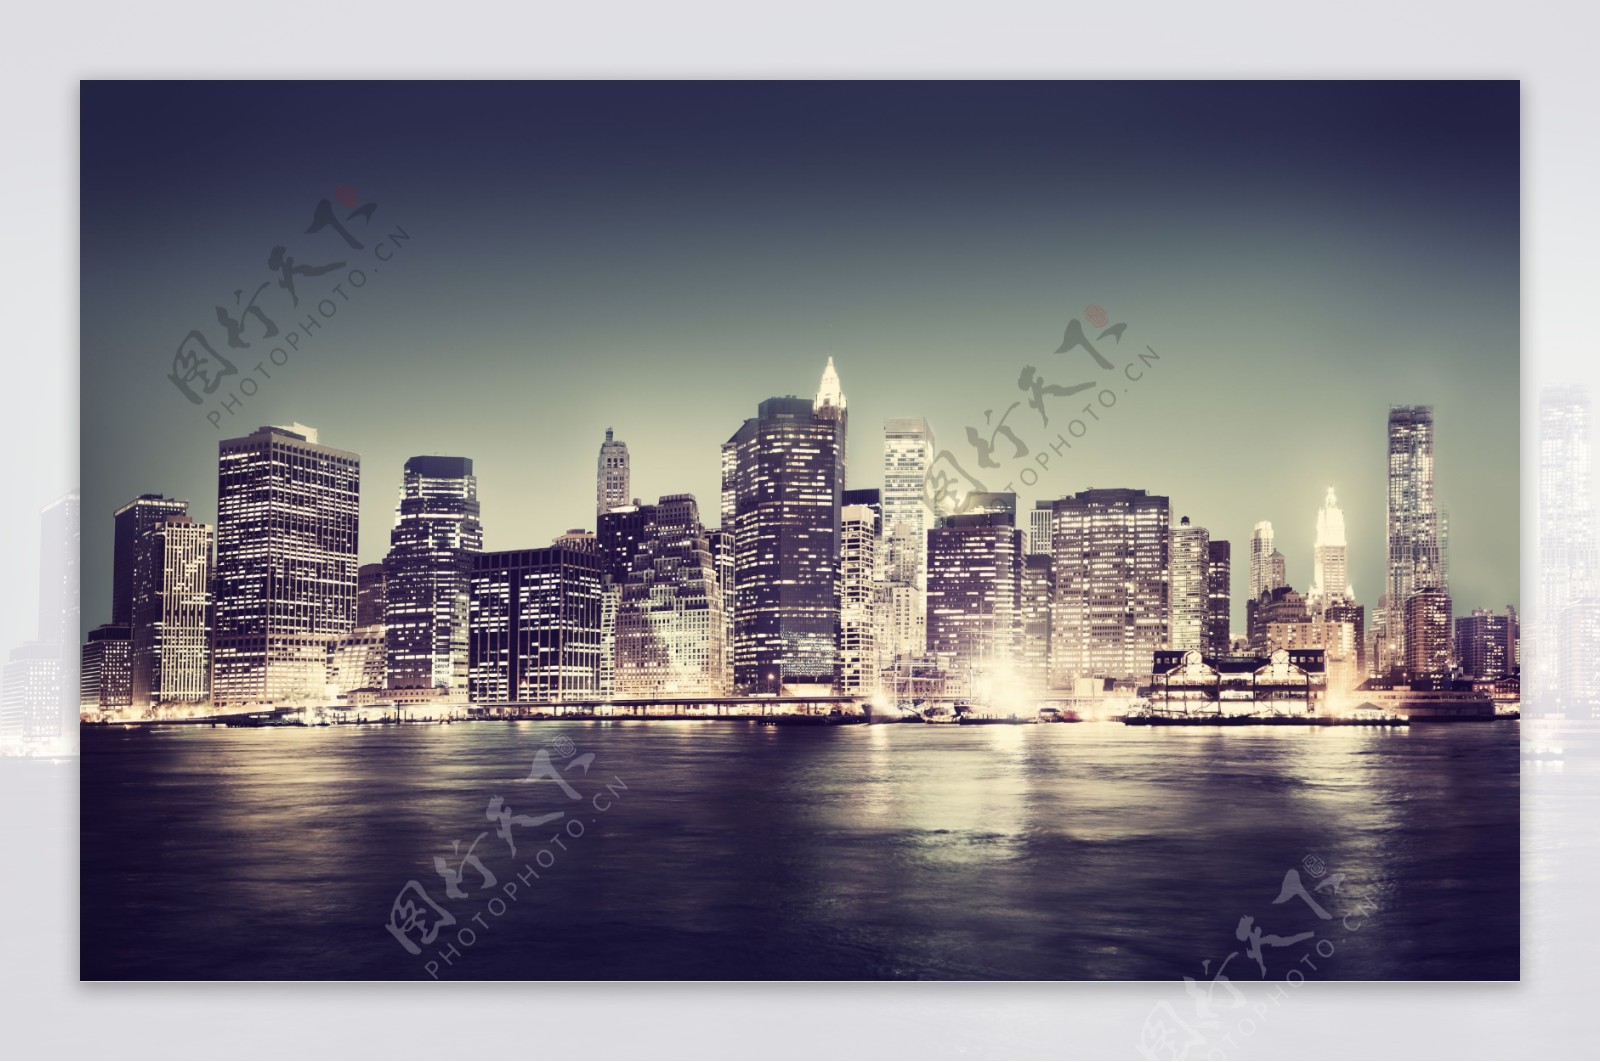 美丽纽约夜景摄影